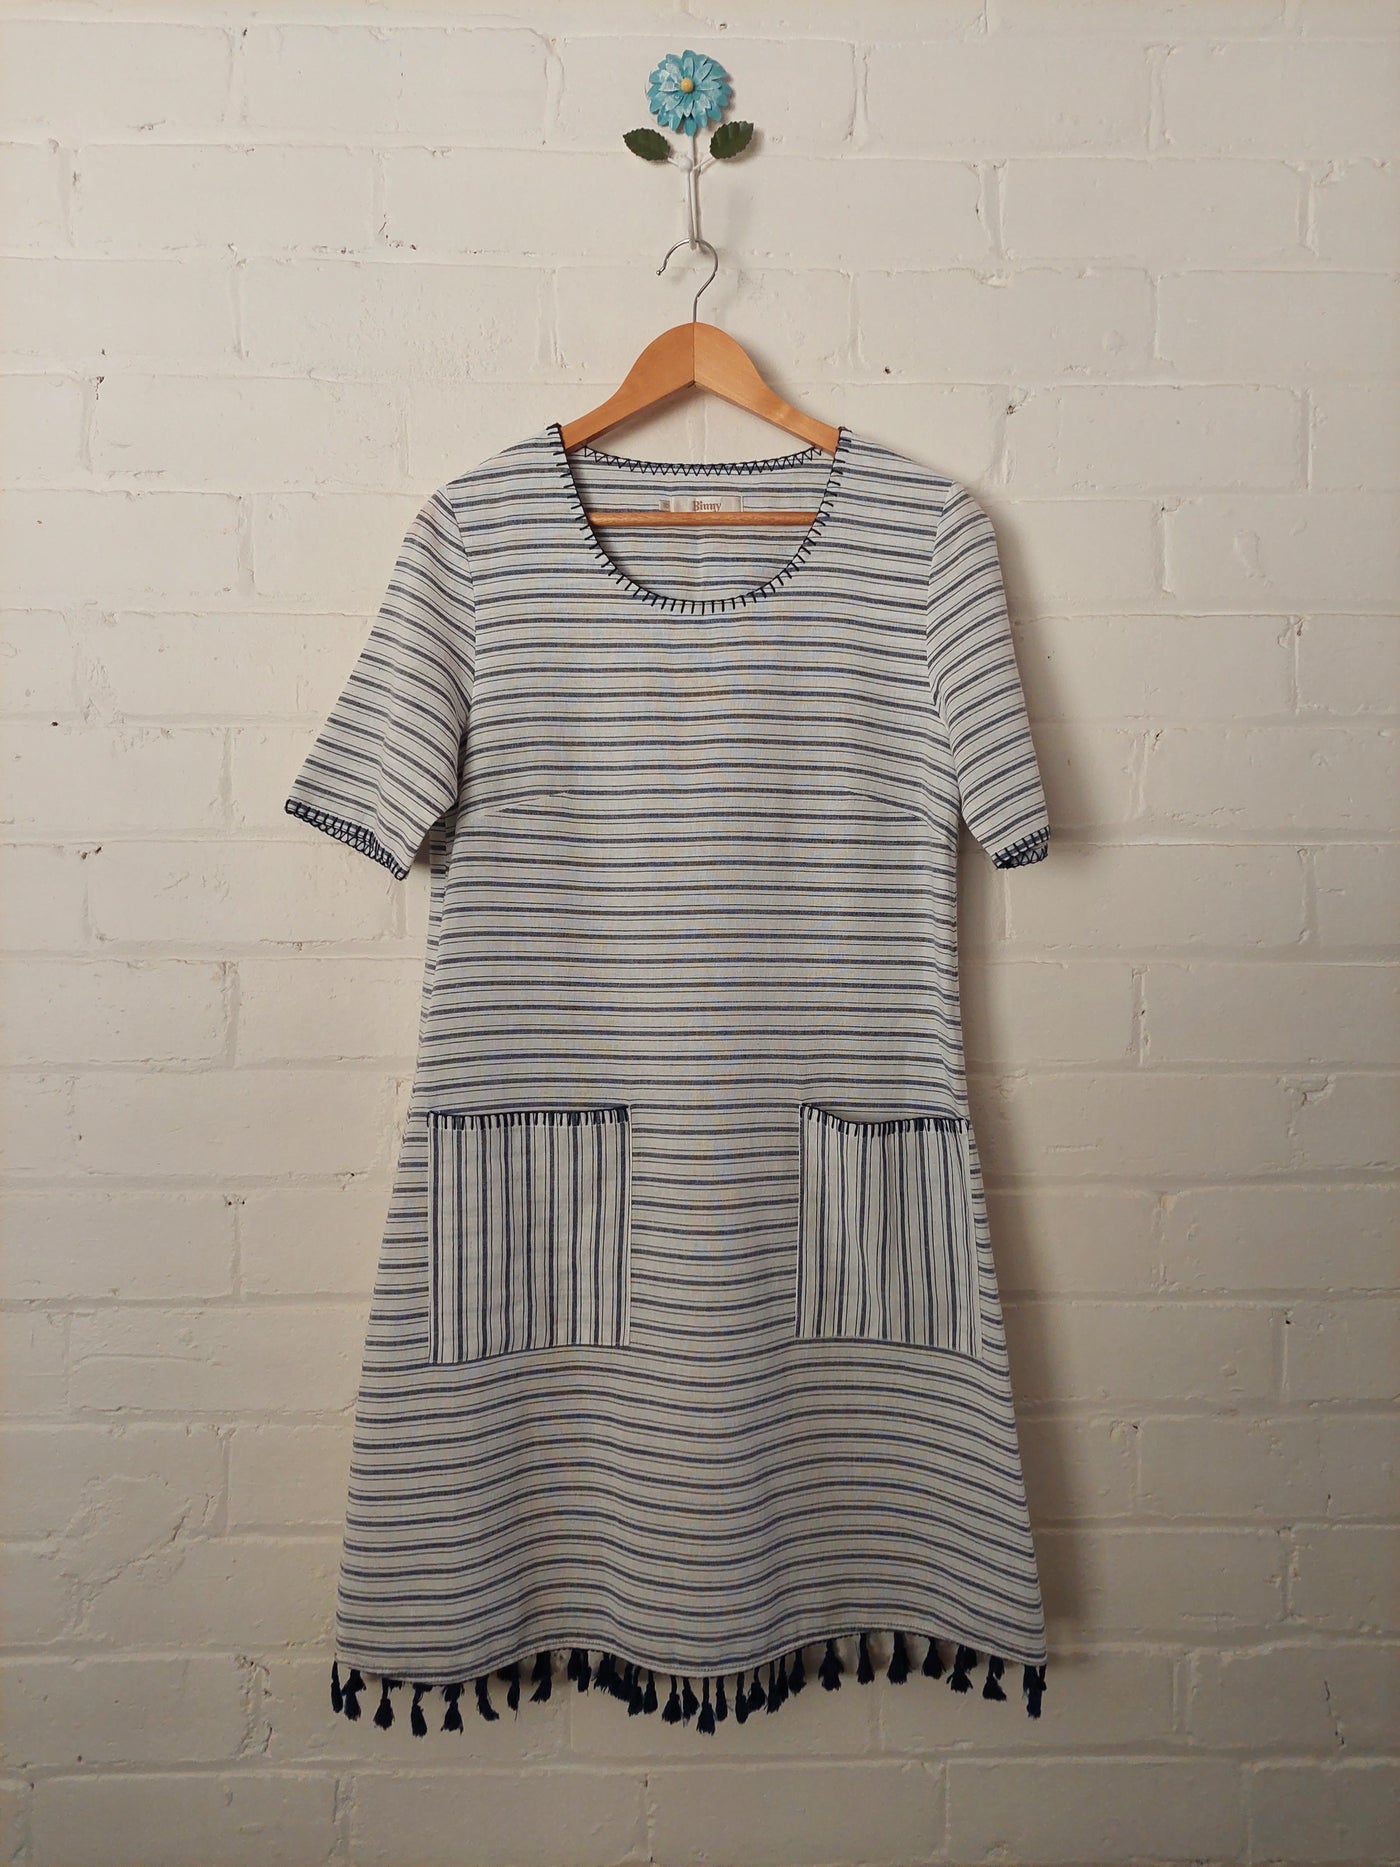 Binny 100% Cotton white & blue striped pocket dress, Size 10